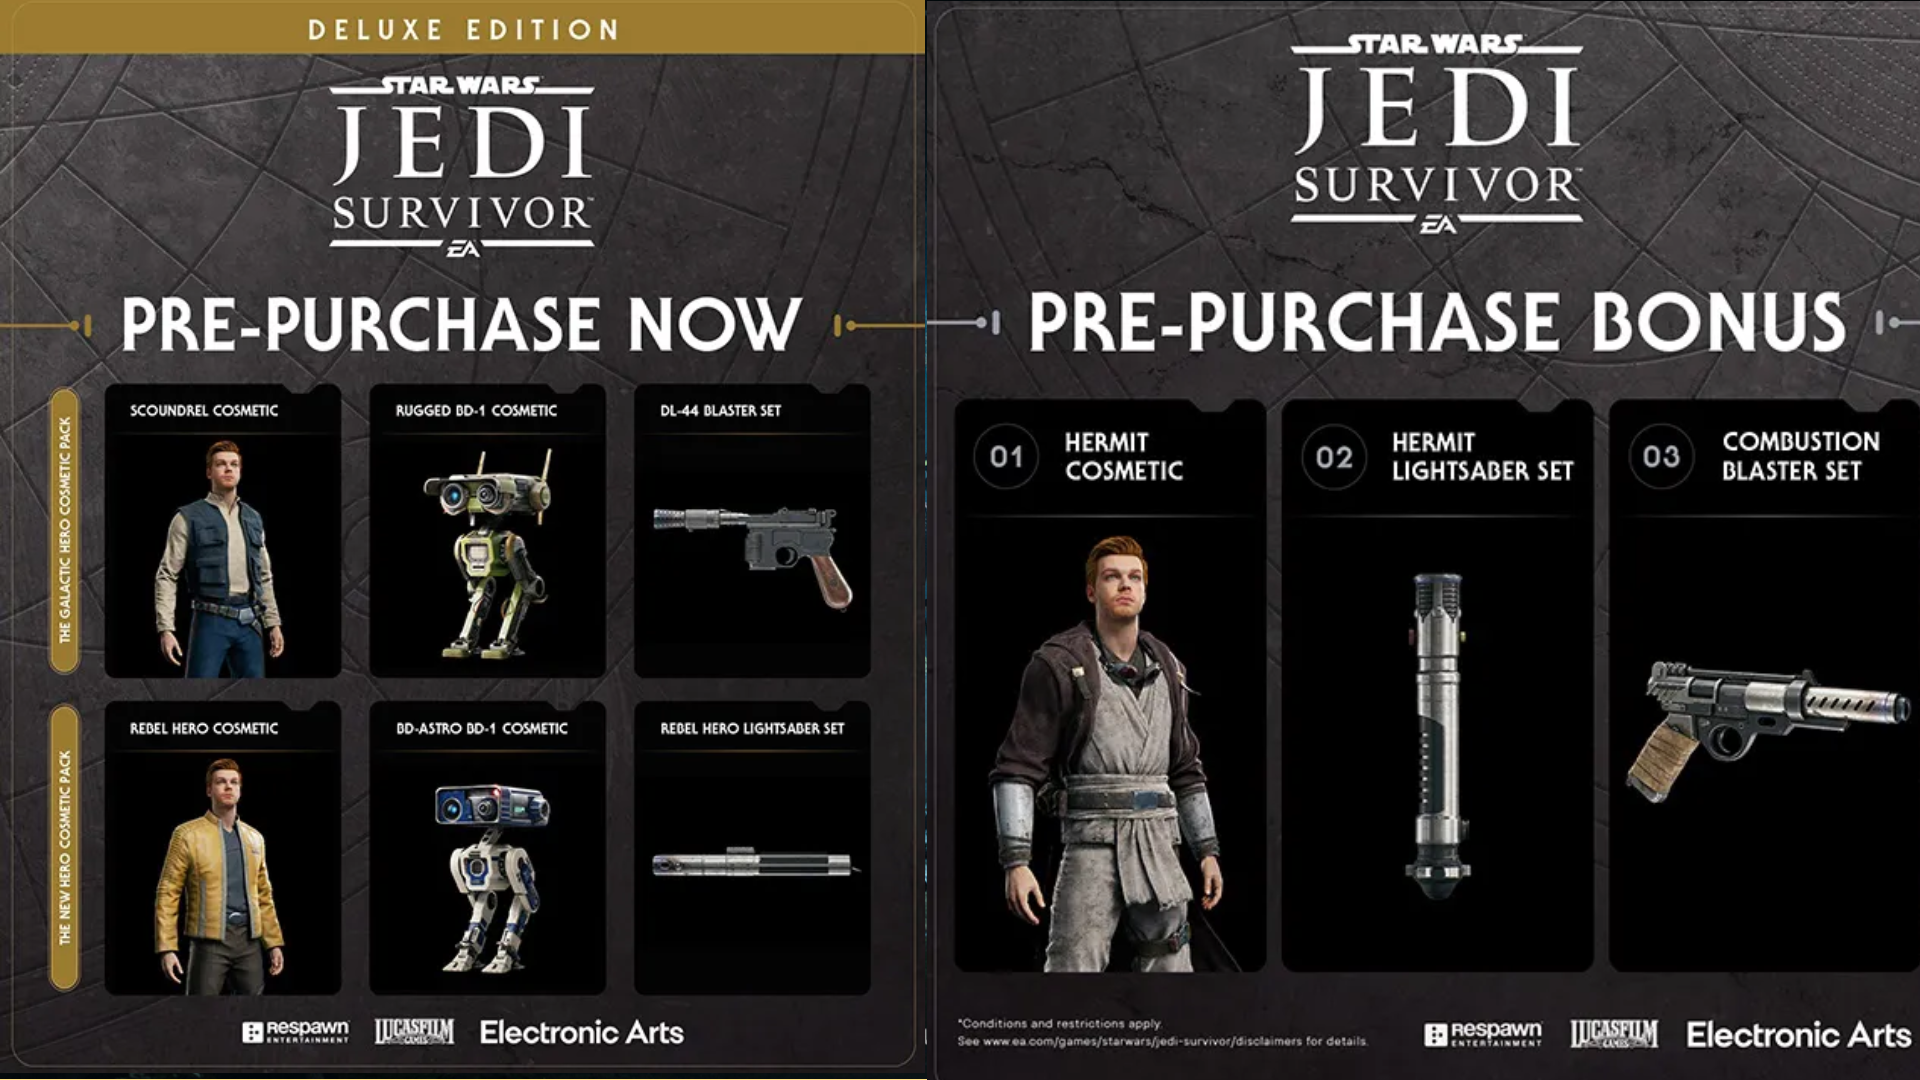 Image showing pre-order bonus rewards for Jedi: Survivor